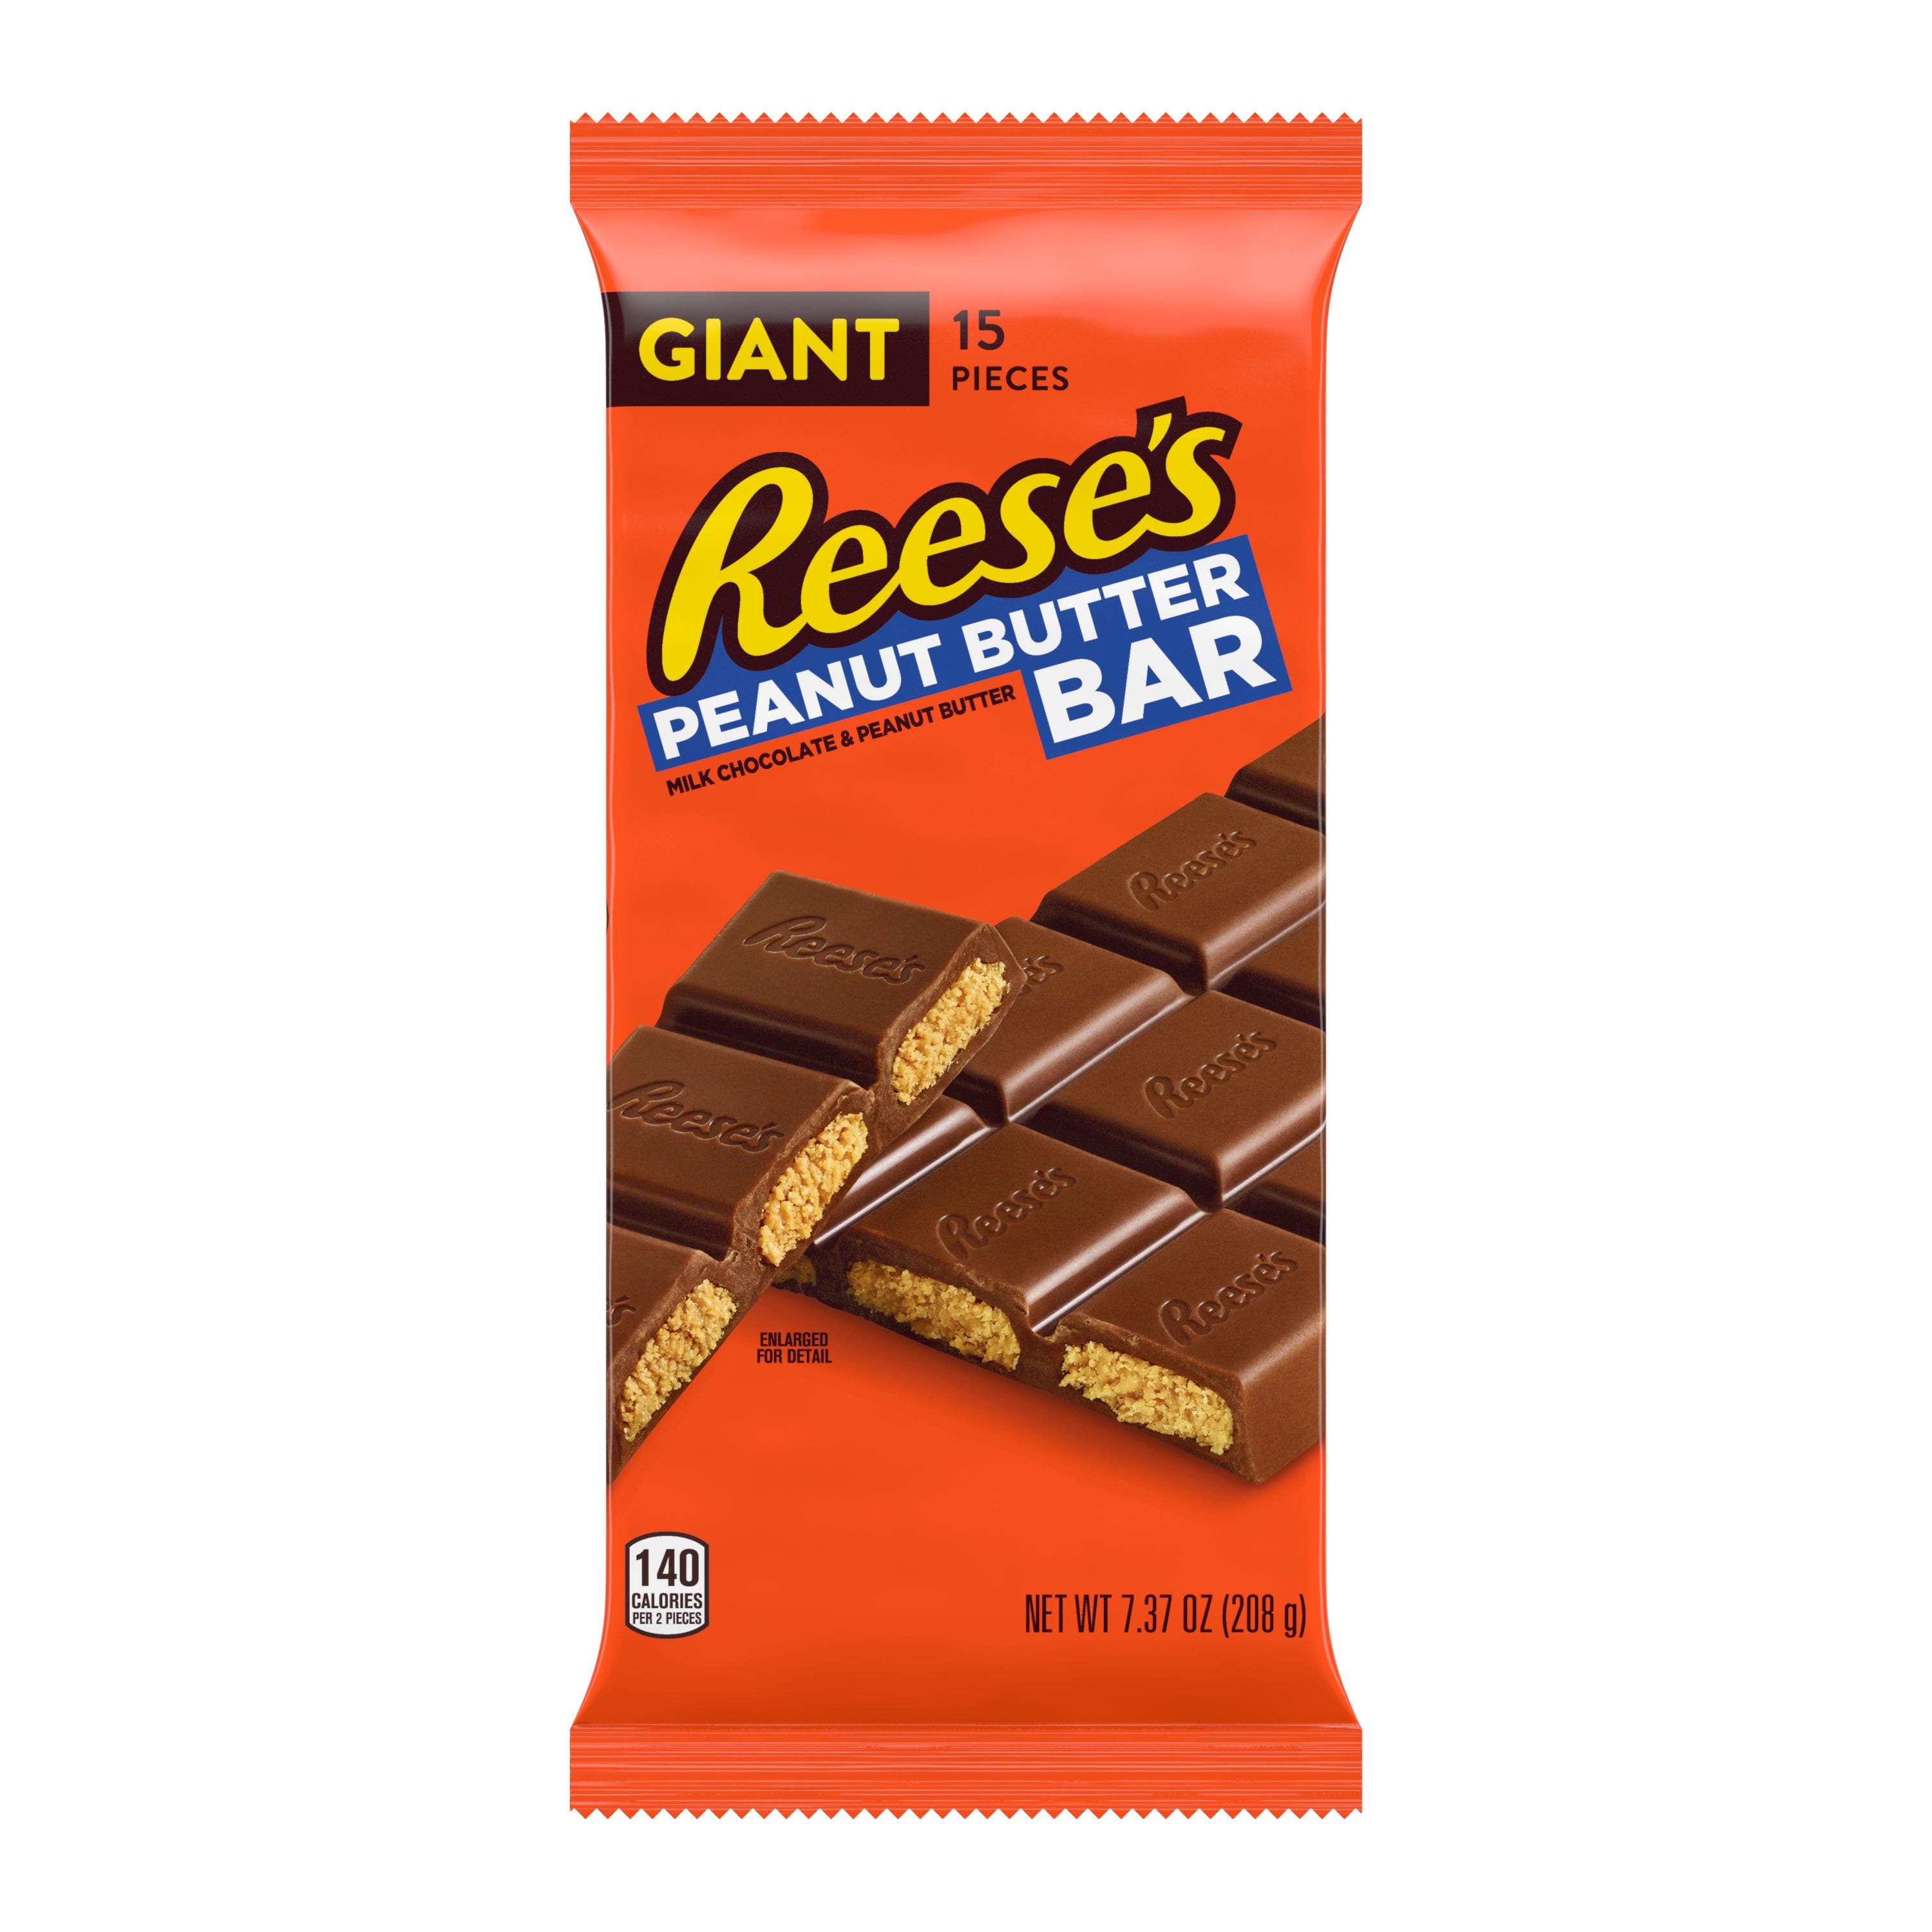 Imagem da embalagem tamanho gigante de REESE'S Peanut Butter.